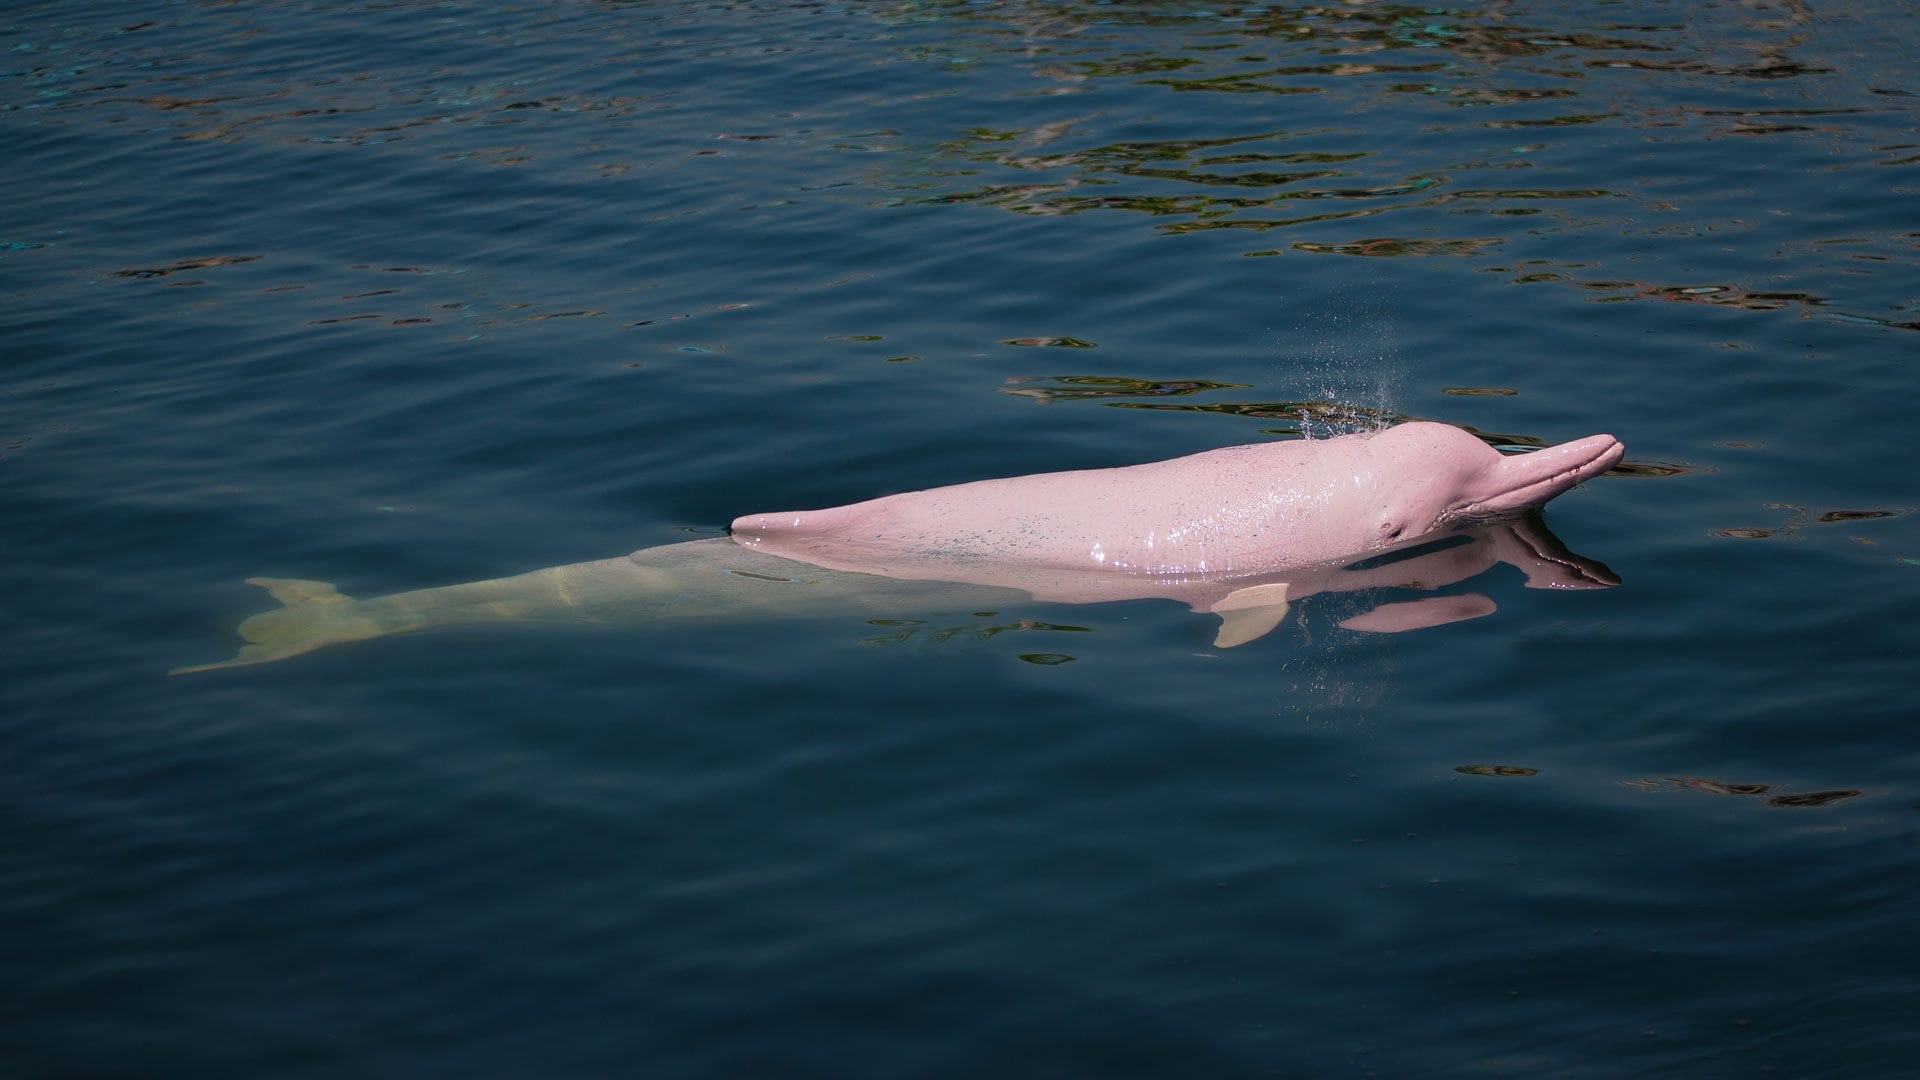 Los delfines rosas pueden ser avistados desde botes y pequeñas embarcaciones turísticas en algunas partes del Río Amazonas (Shutterstock)